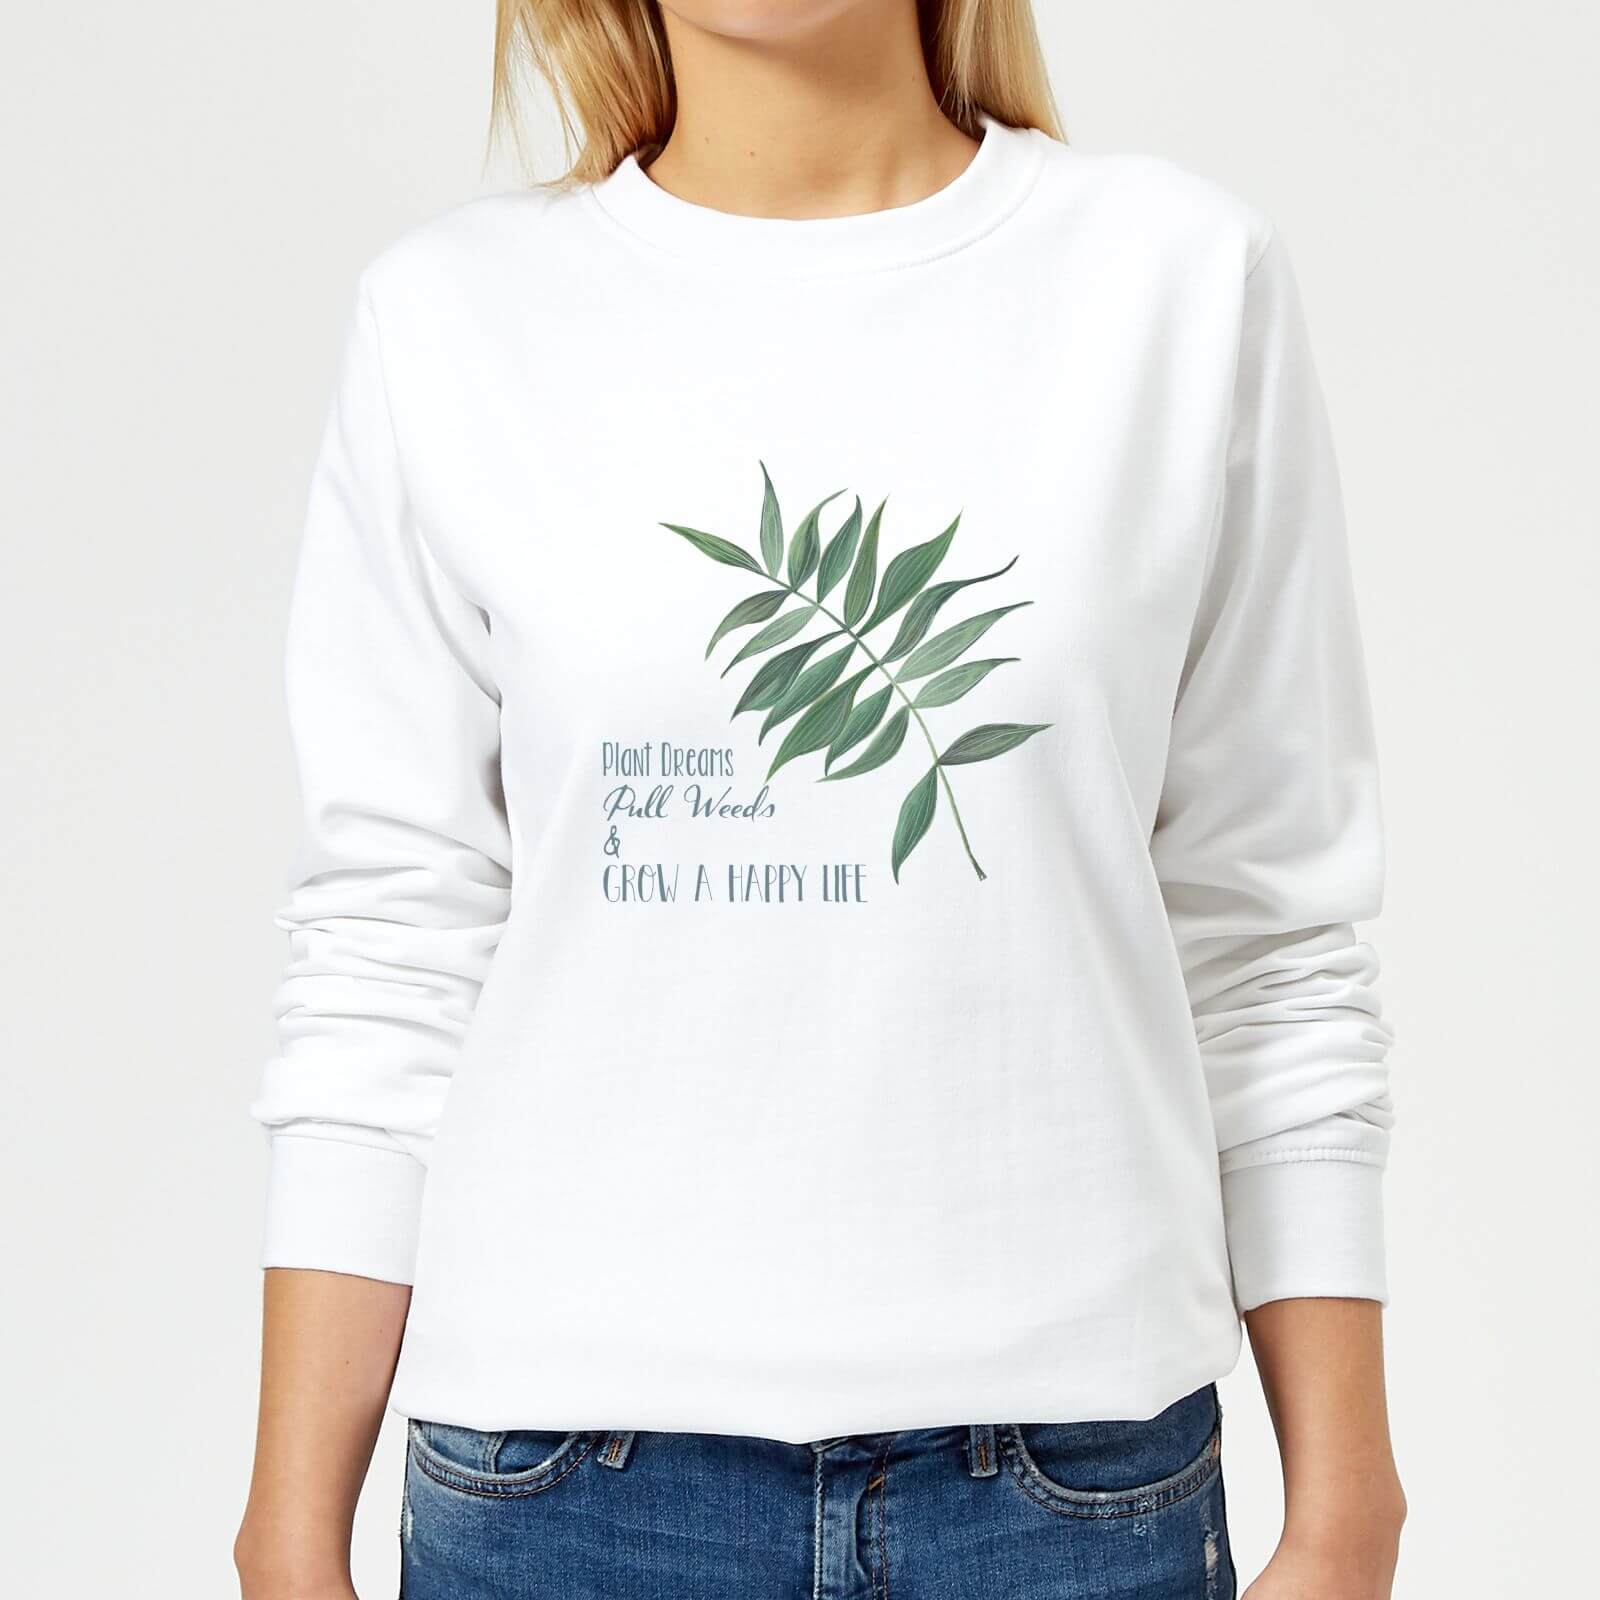 Pull Weeds & Grow A Happy Life Women's Sweatshirt - White - XS - White